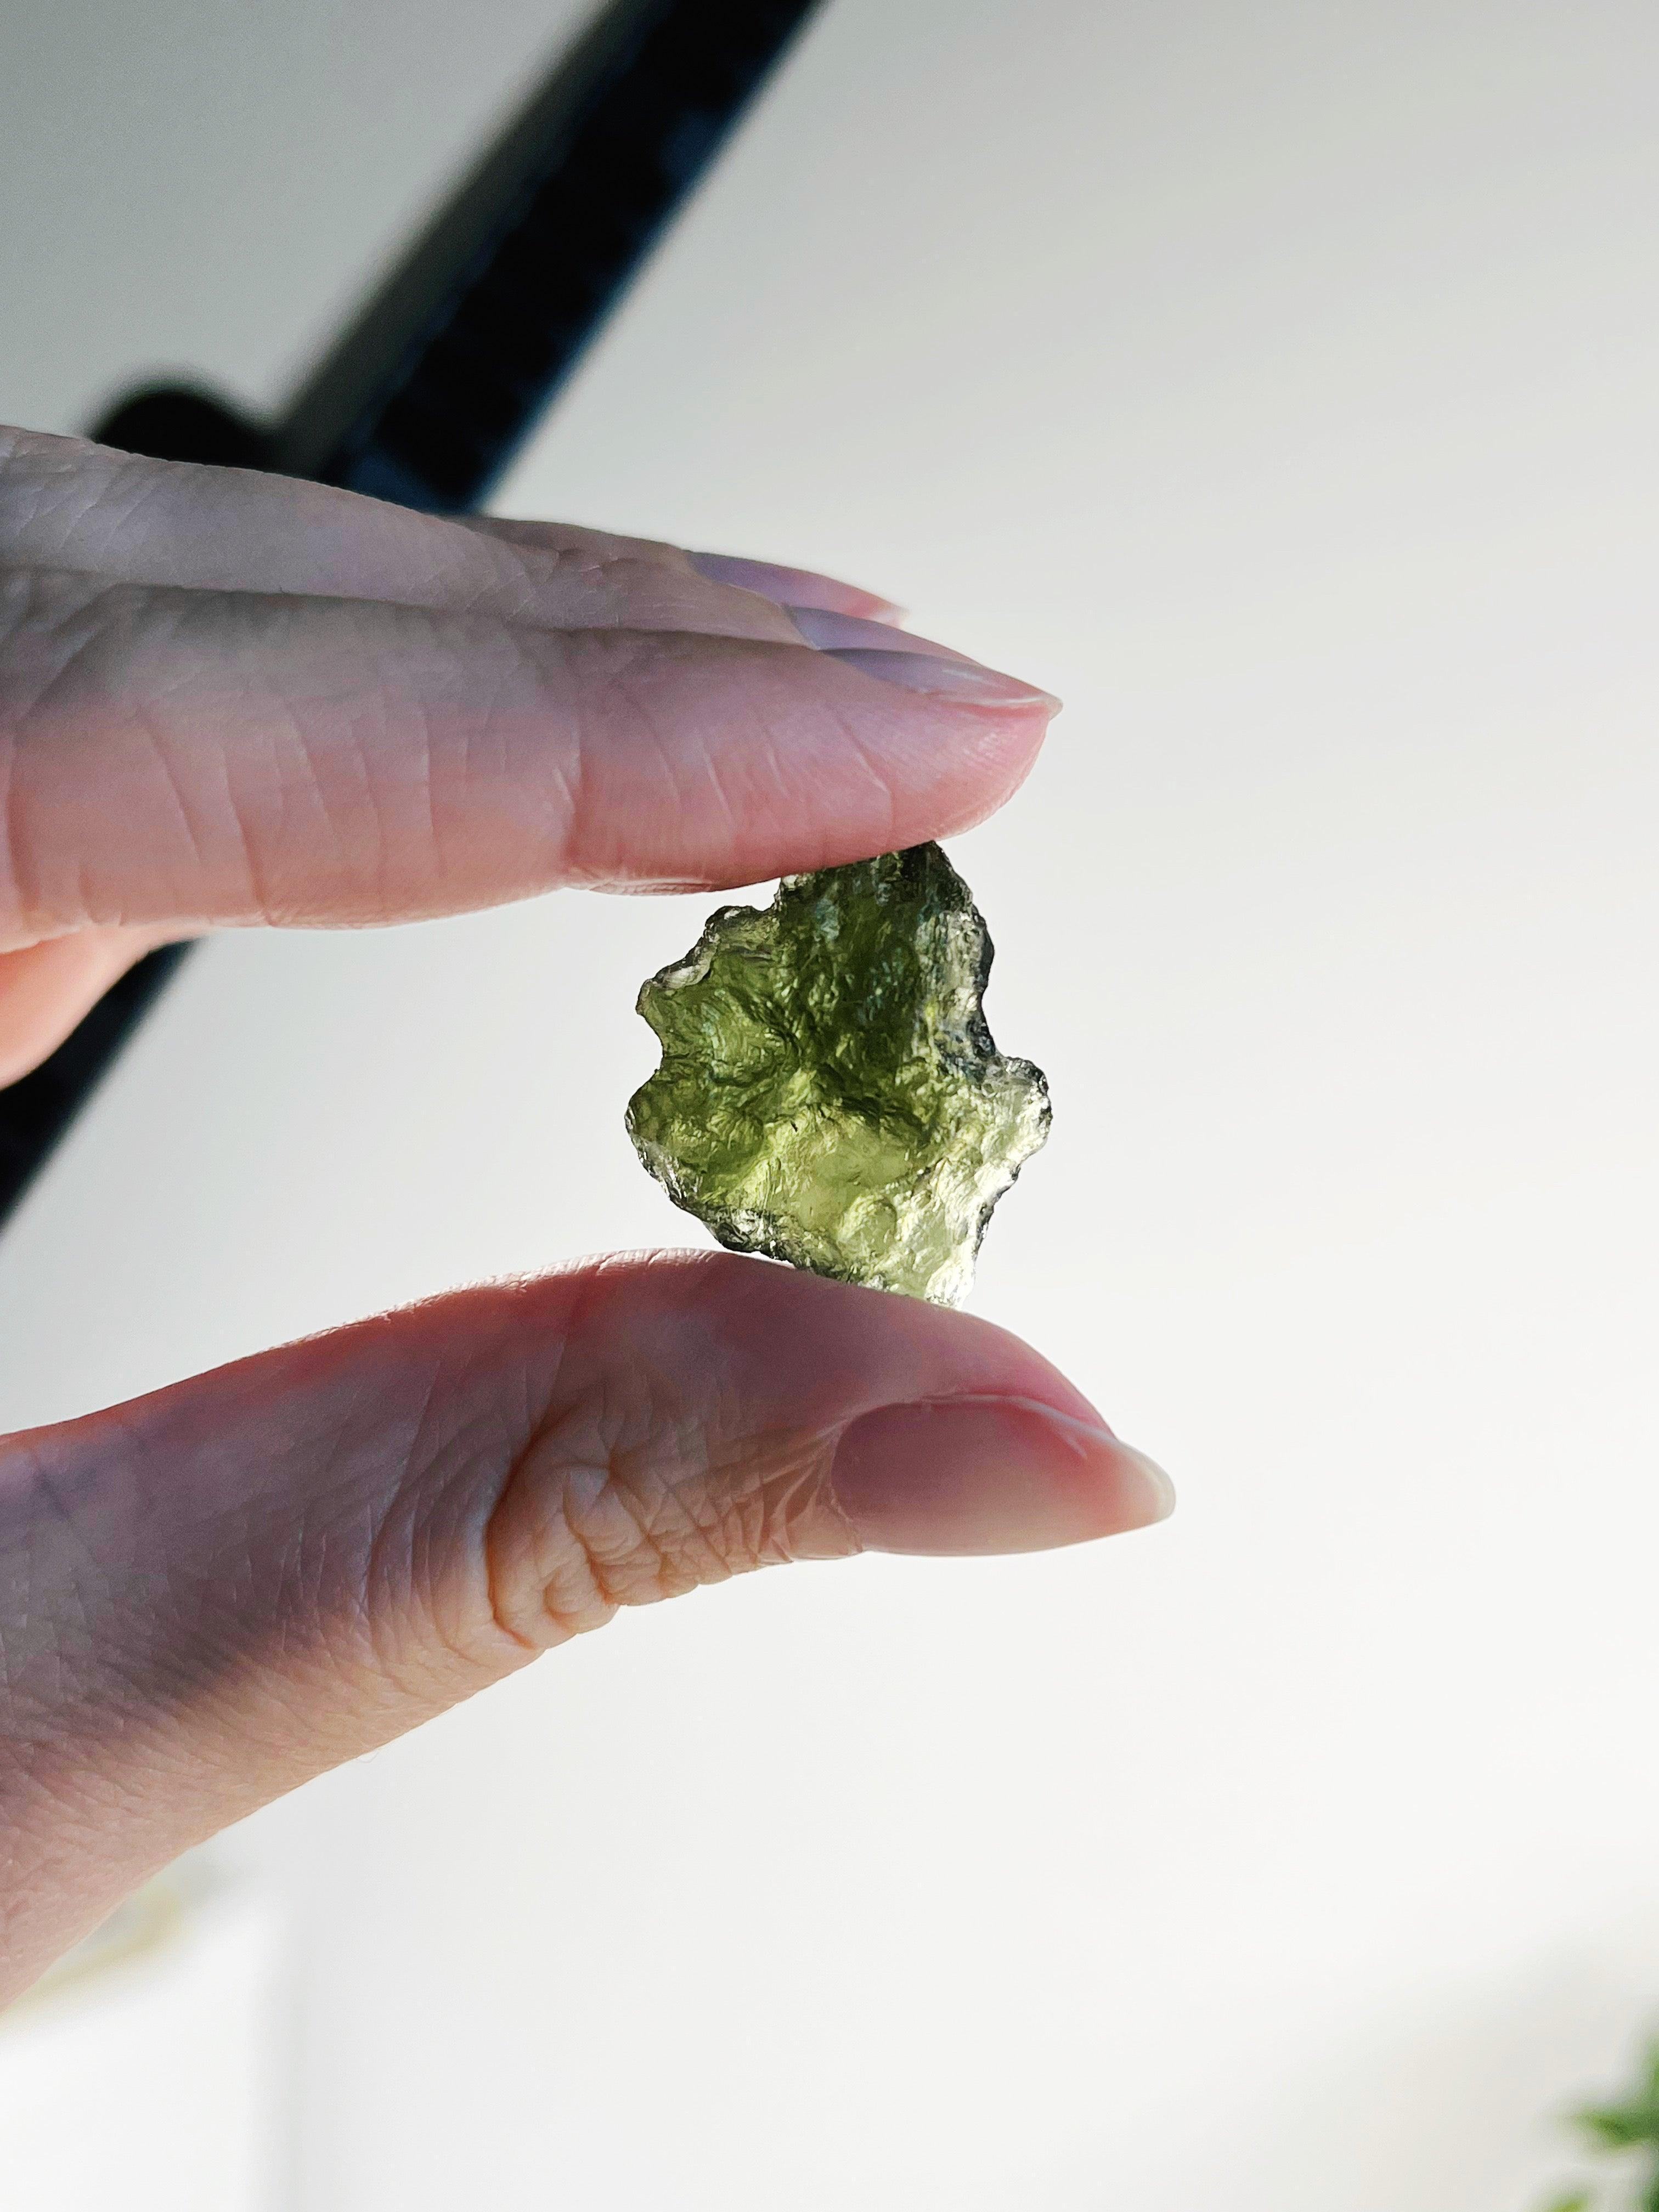 MOLDAVITE 4 - moldavite, tektite - The Mineral Maven